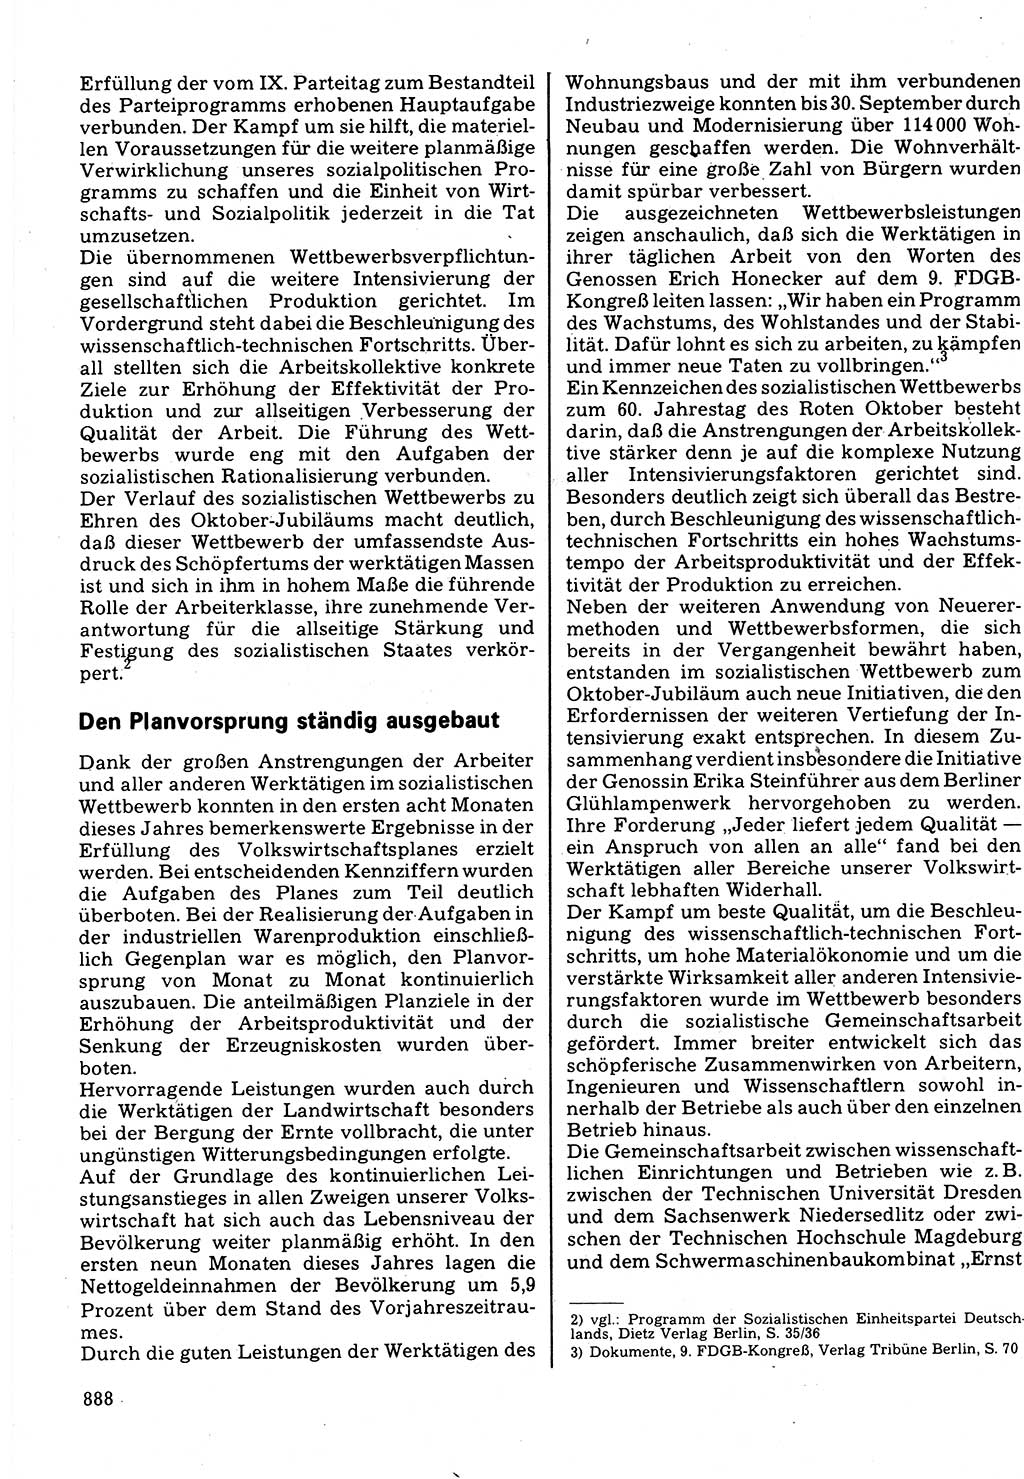 Neuer Weg (NW), Organ des Zentralkomitees (ZK) der SED (Sozialistische Einheitspartei Deutschlands) für Fragen des Parteilebens, 32. Jahrgang [Deutsche Demokratische Republik (DDR)] 1977, Seite 888 (NW ZK SED DDR 1977, S. 888)